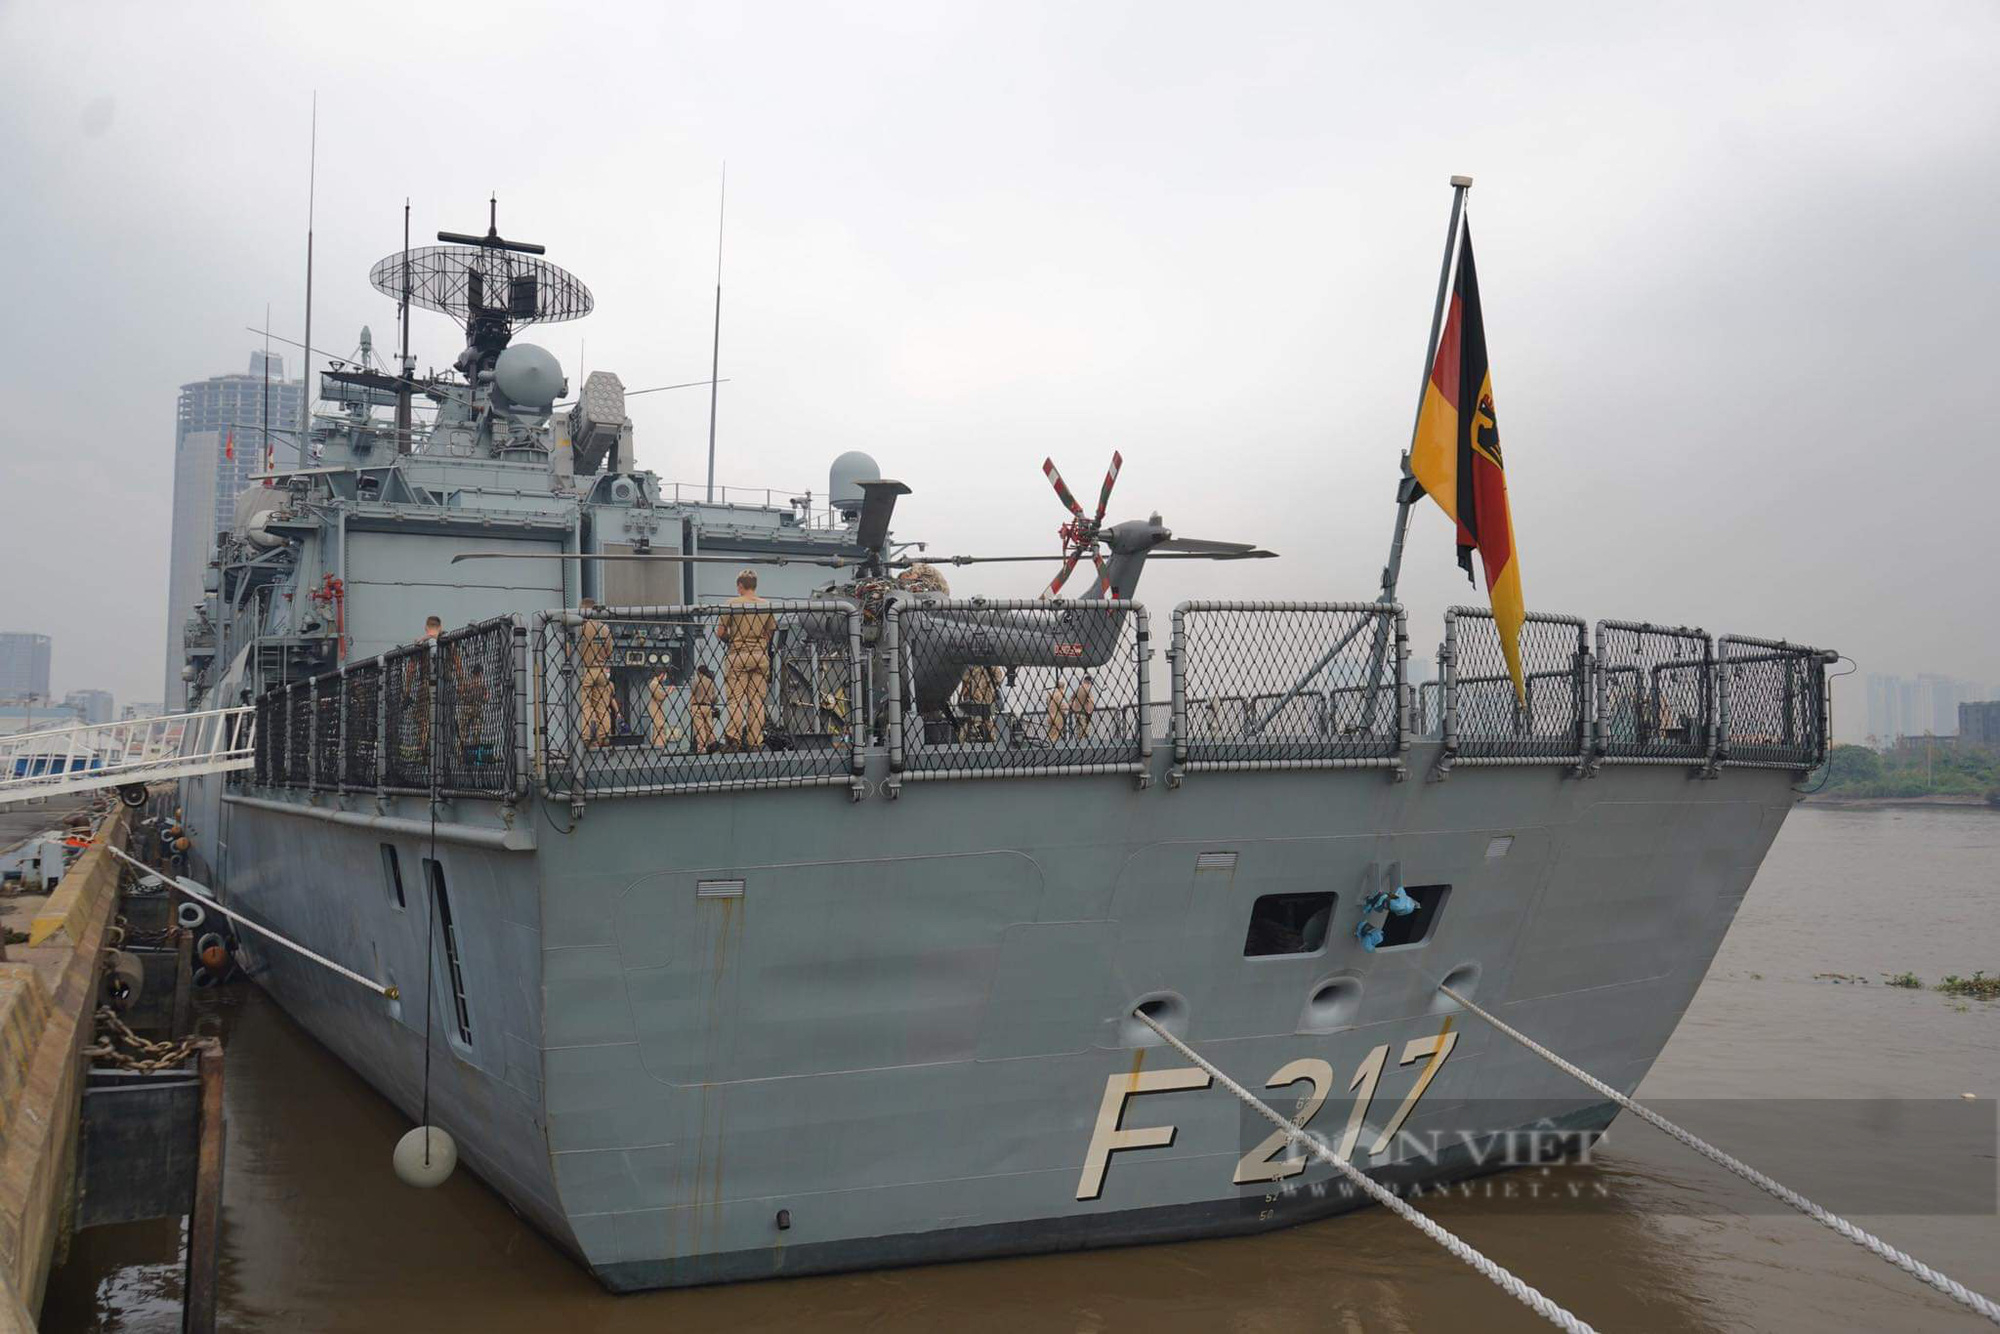 Ảnh: Mãn nhãn với khinh hạm Bayern của Hải quân Đức tại bến cảng Nhà Rồng - Ảnh 5.